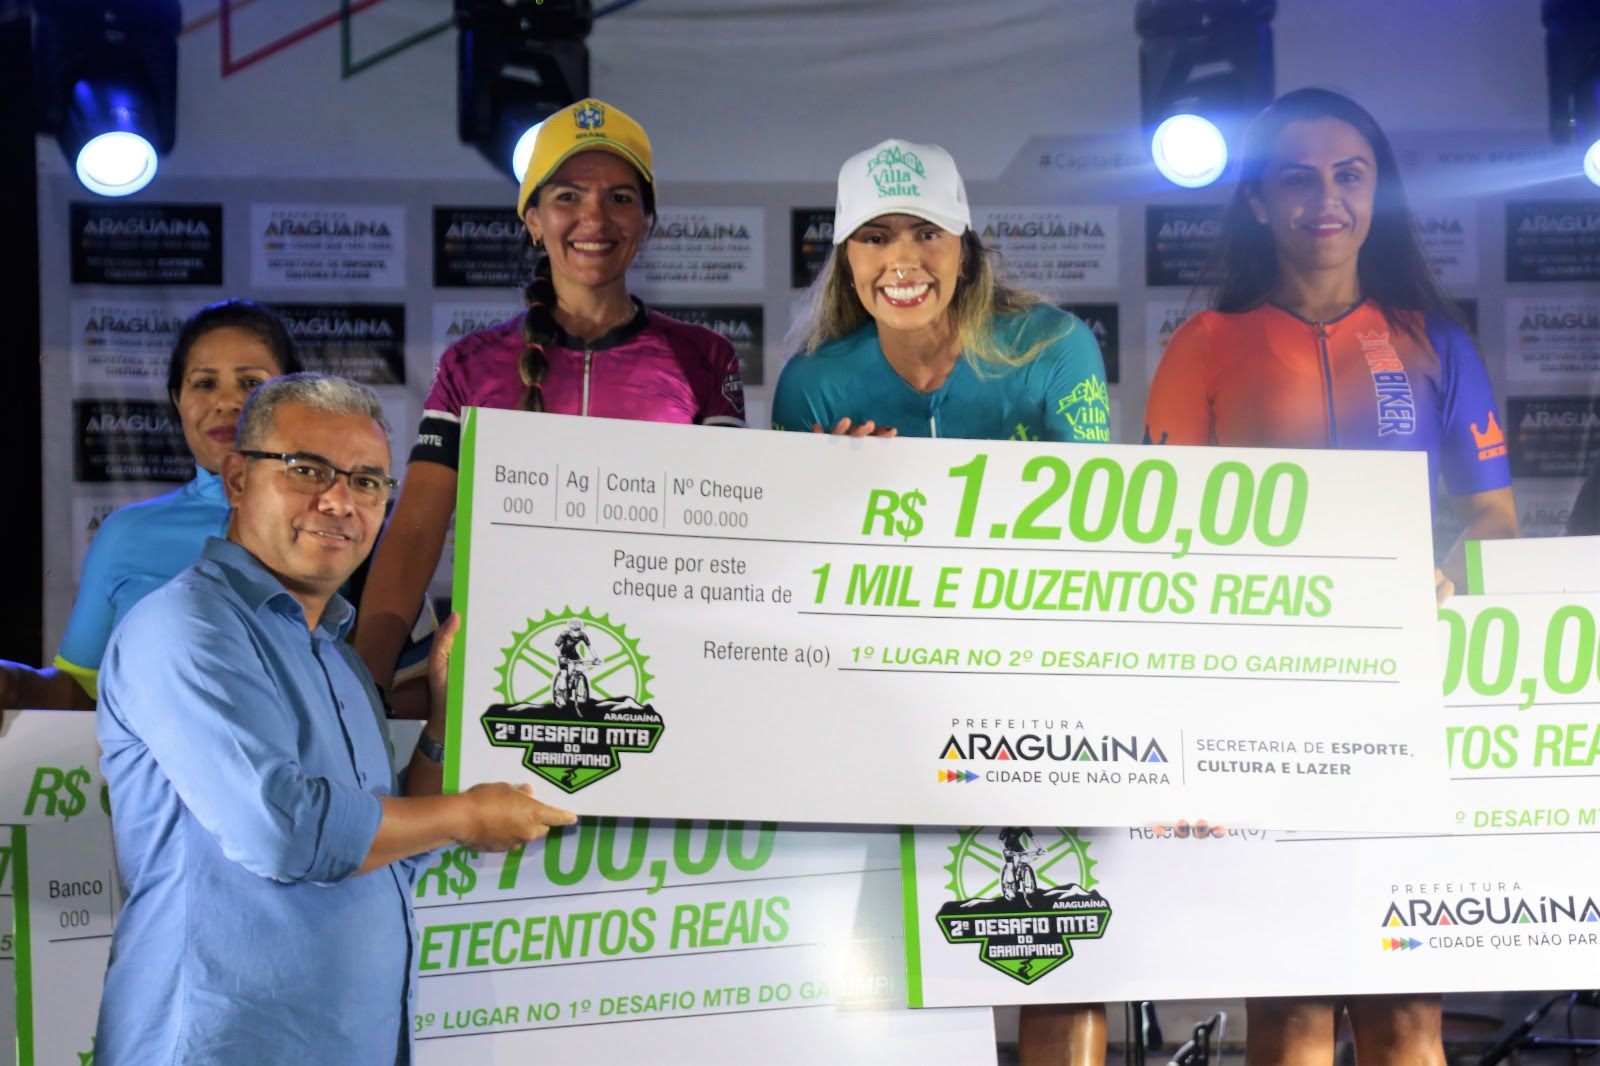 Pela segunda vez no Desafio de Mountain Bike, a empresária e atleta Wêslla Aguiar alcançou o primeiro lugar na Categoria Open Feminina